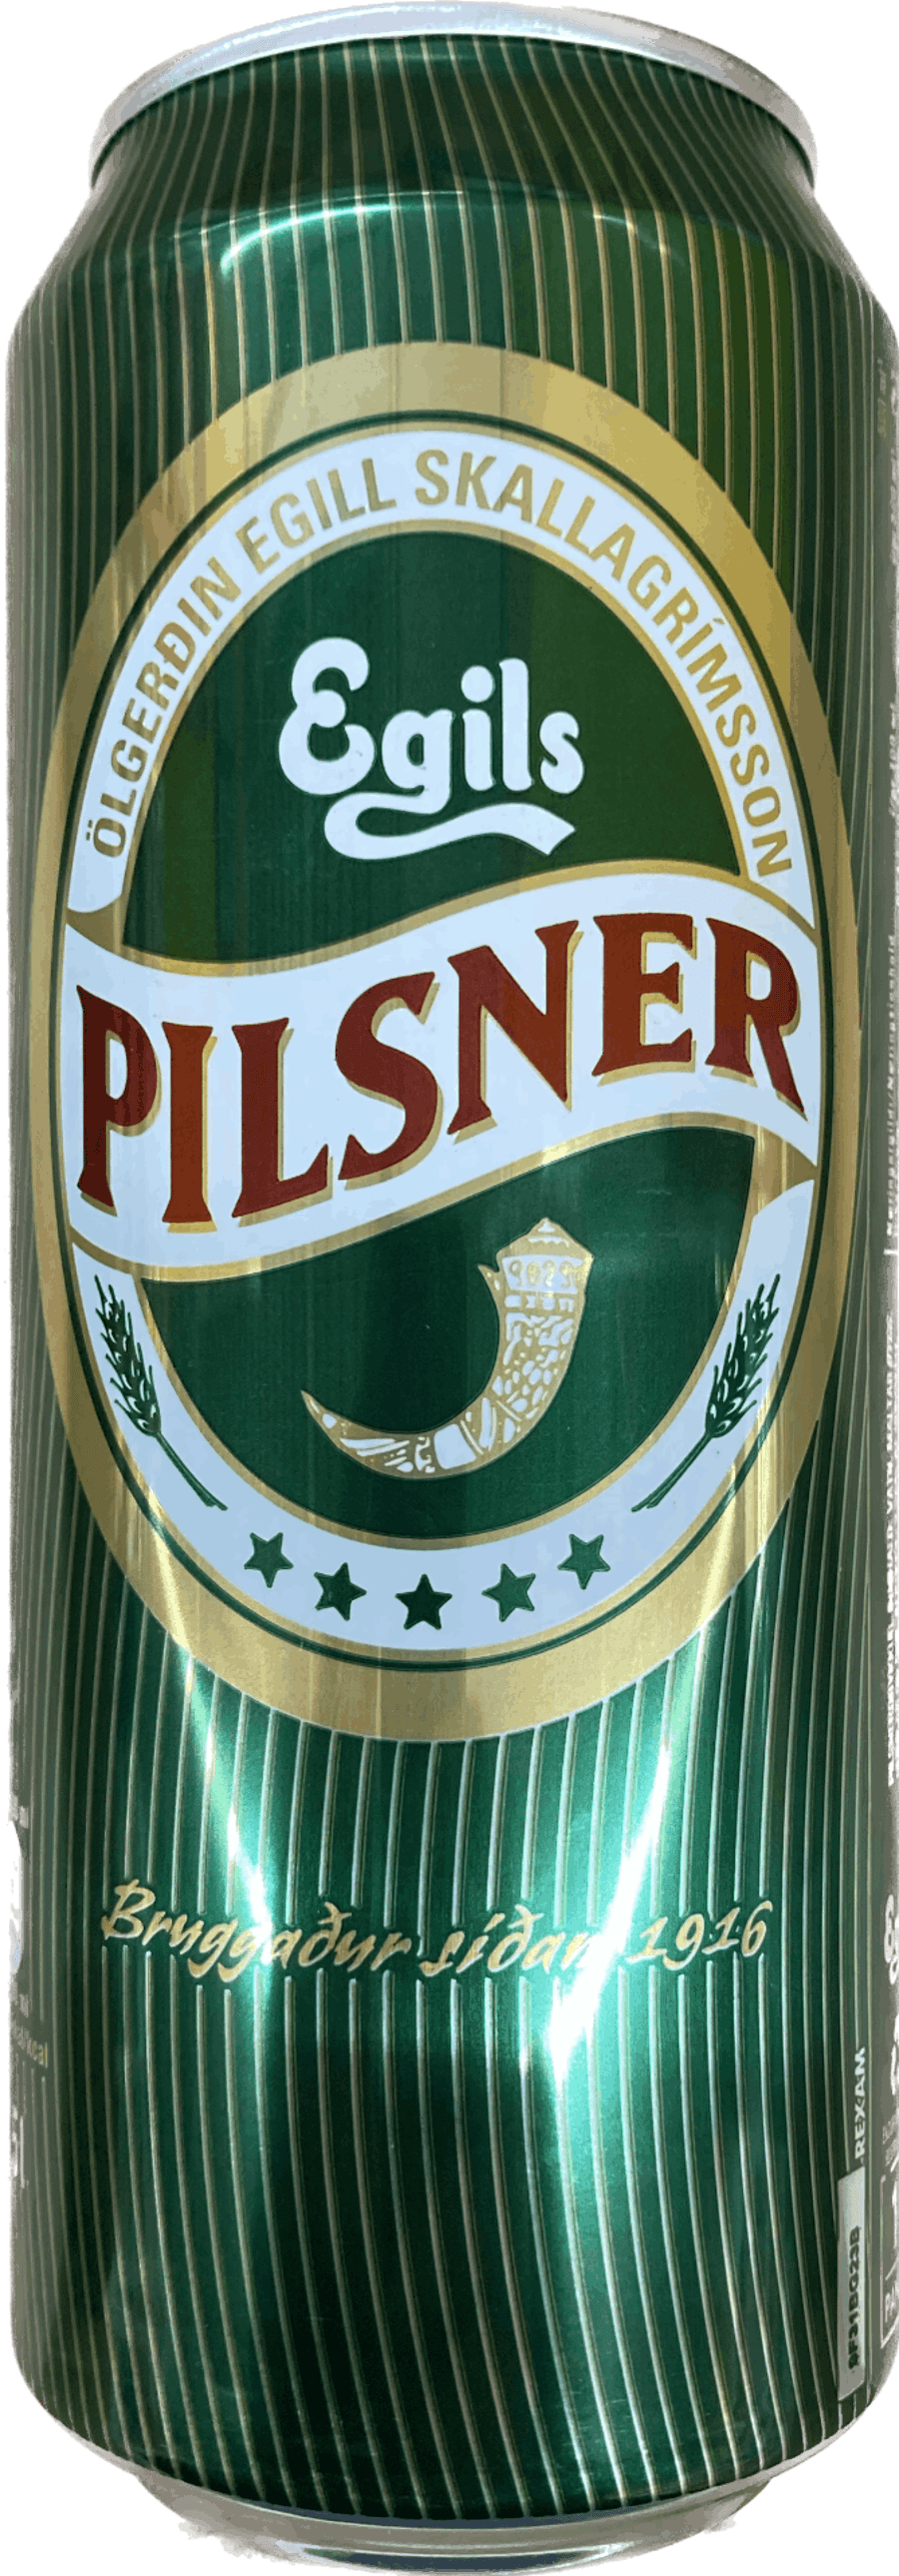 Egils pilsner 2,25% 500 ml